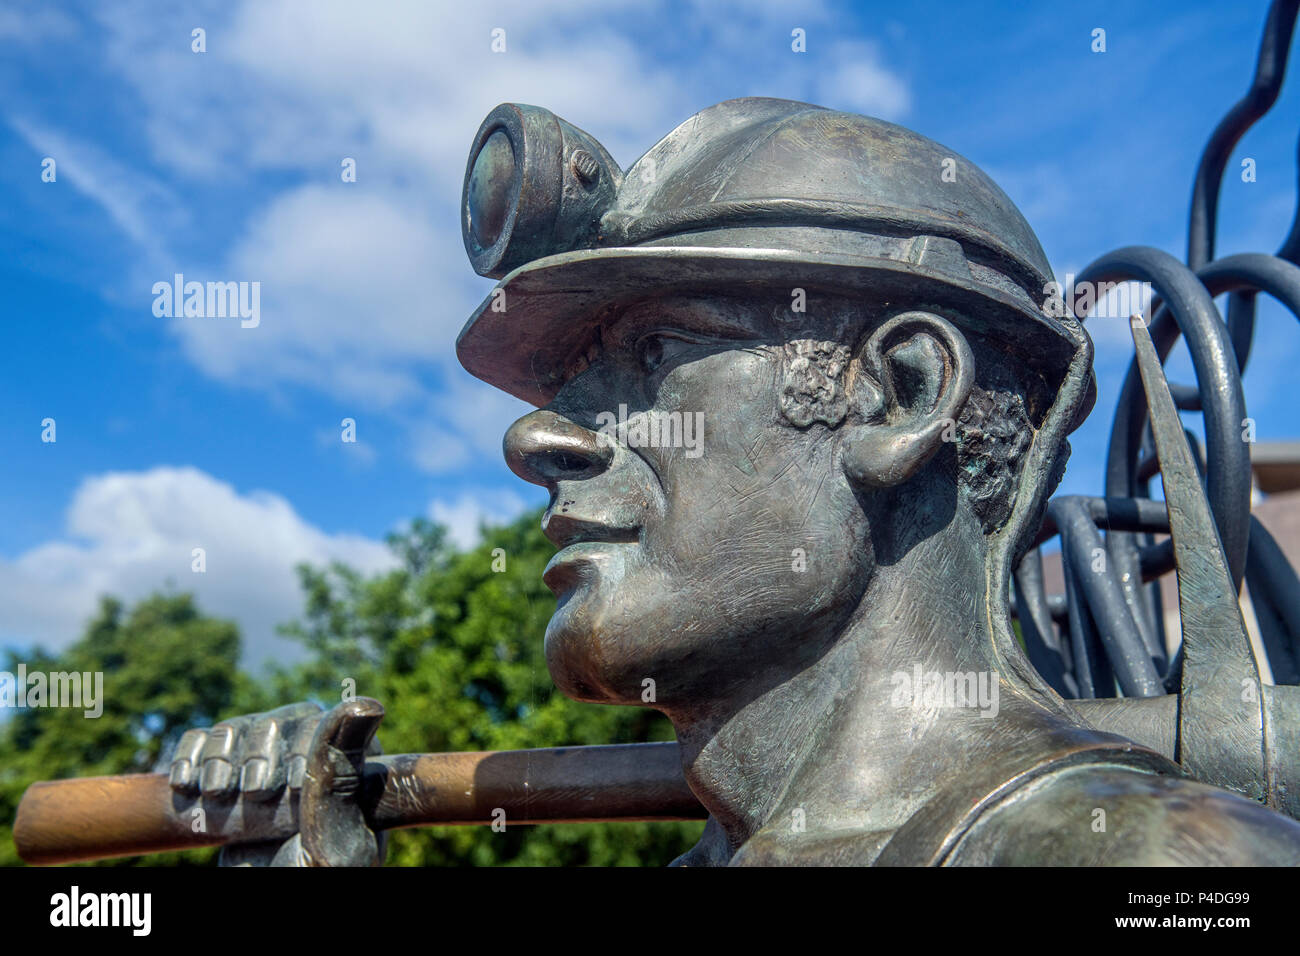 Statue de mineur de charbon gallois érigée dans la baie de Cardiff, Pays de Galles, vu close up Banque D'Images